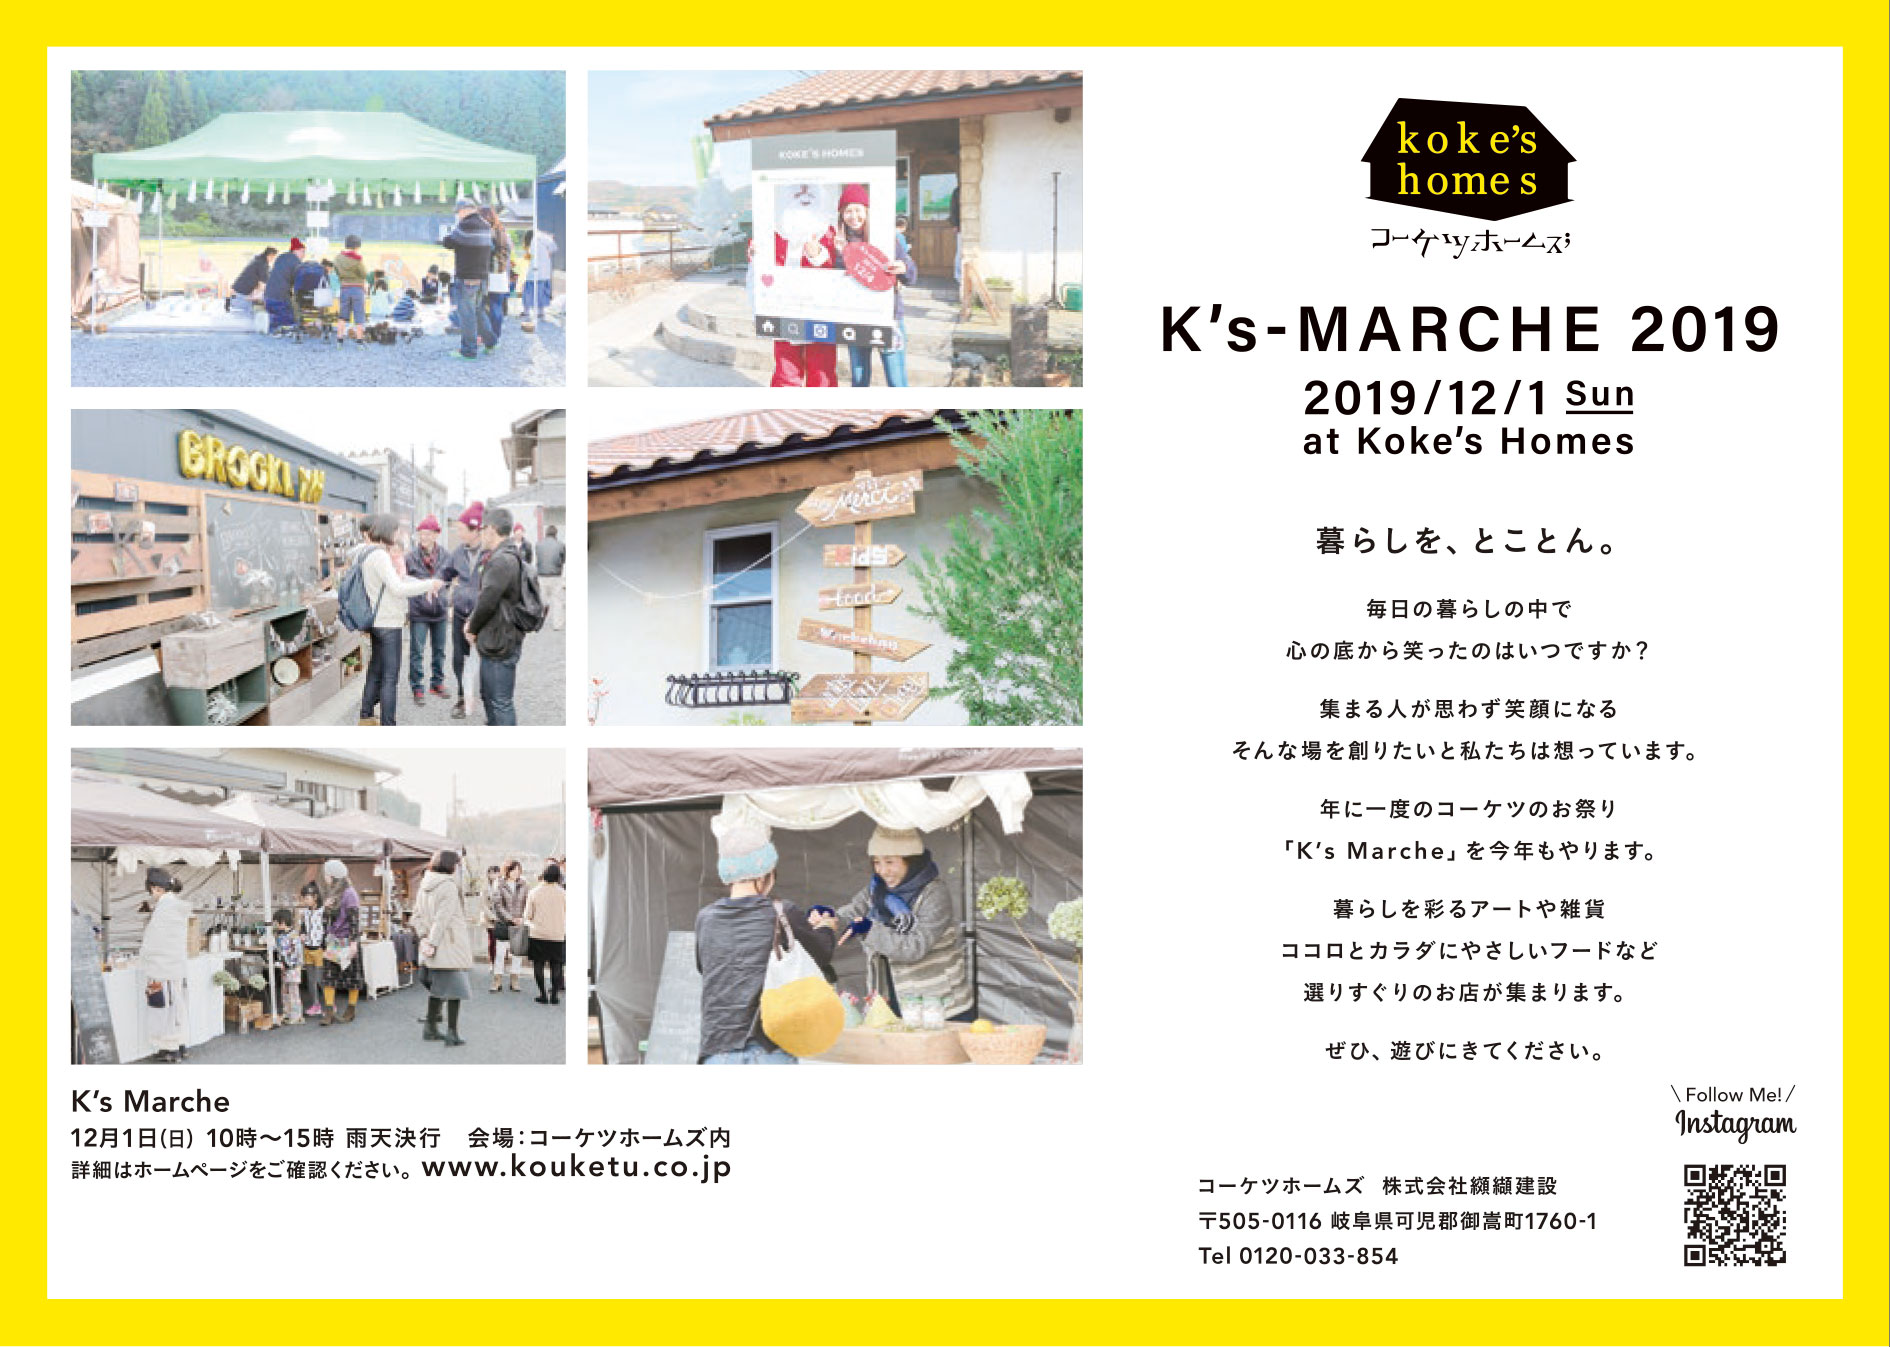 【チャリティグッズイベント販売〜岐阜県】2019年12月1日「K’s-MARCHE2019」@岐阜県Koke’s Homes